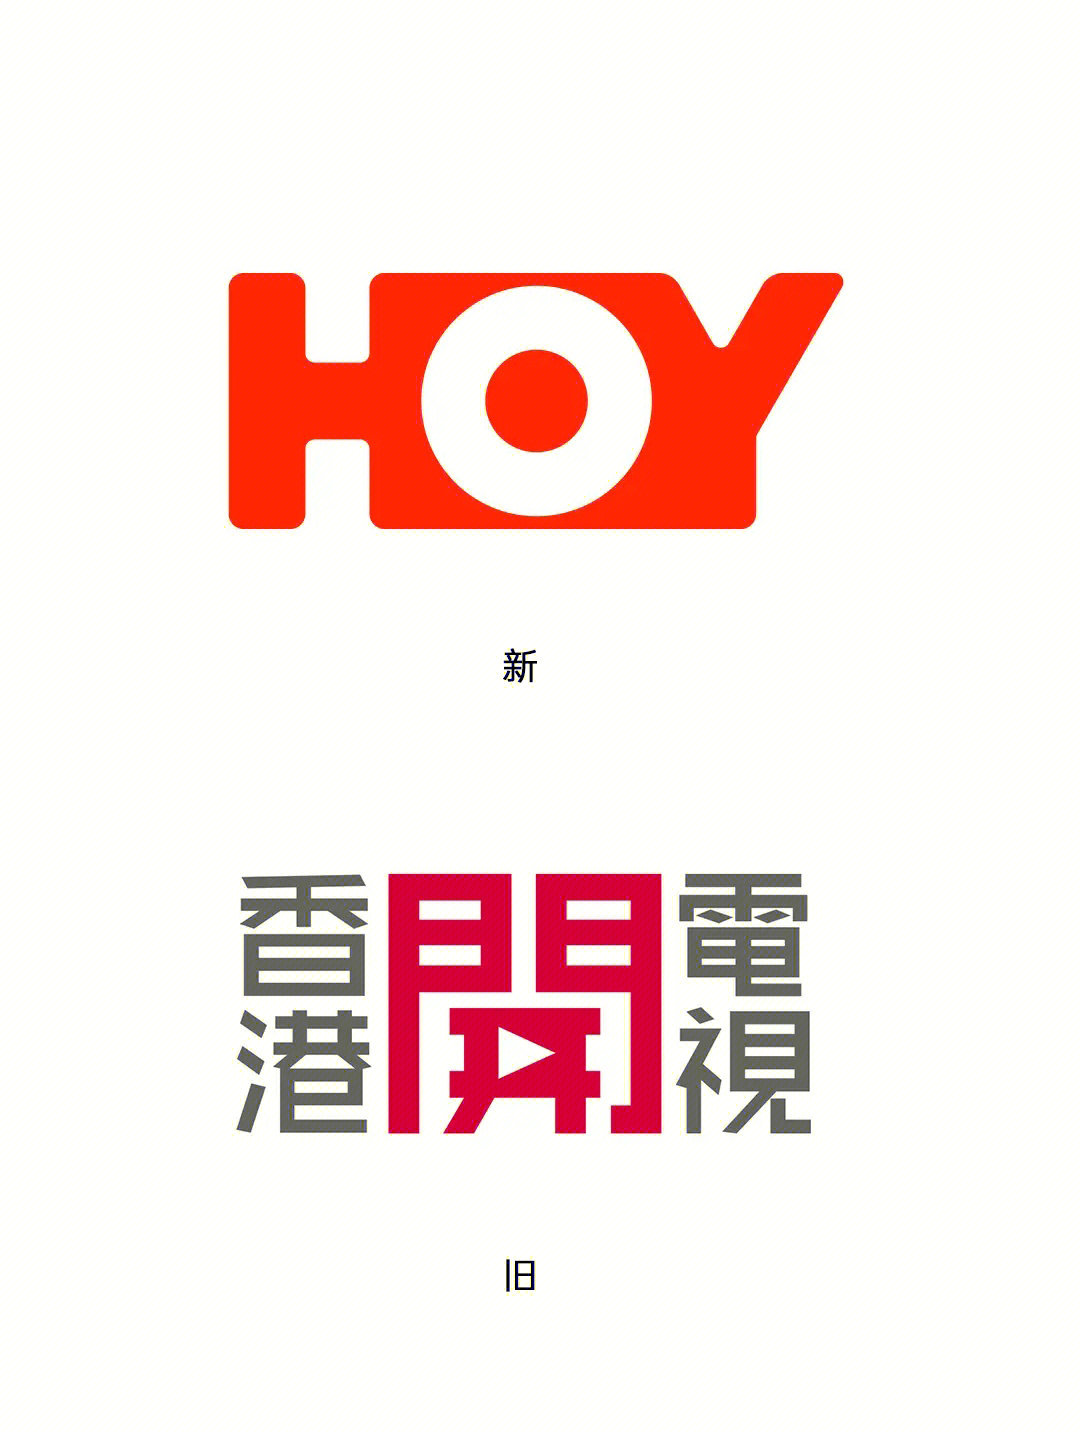 香港免费电视频道改名为hoytv并启用新台标